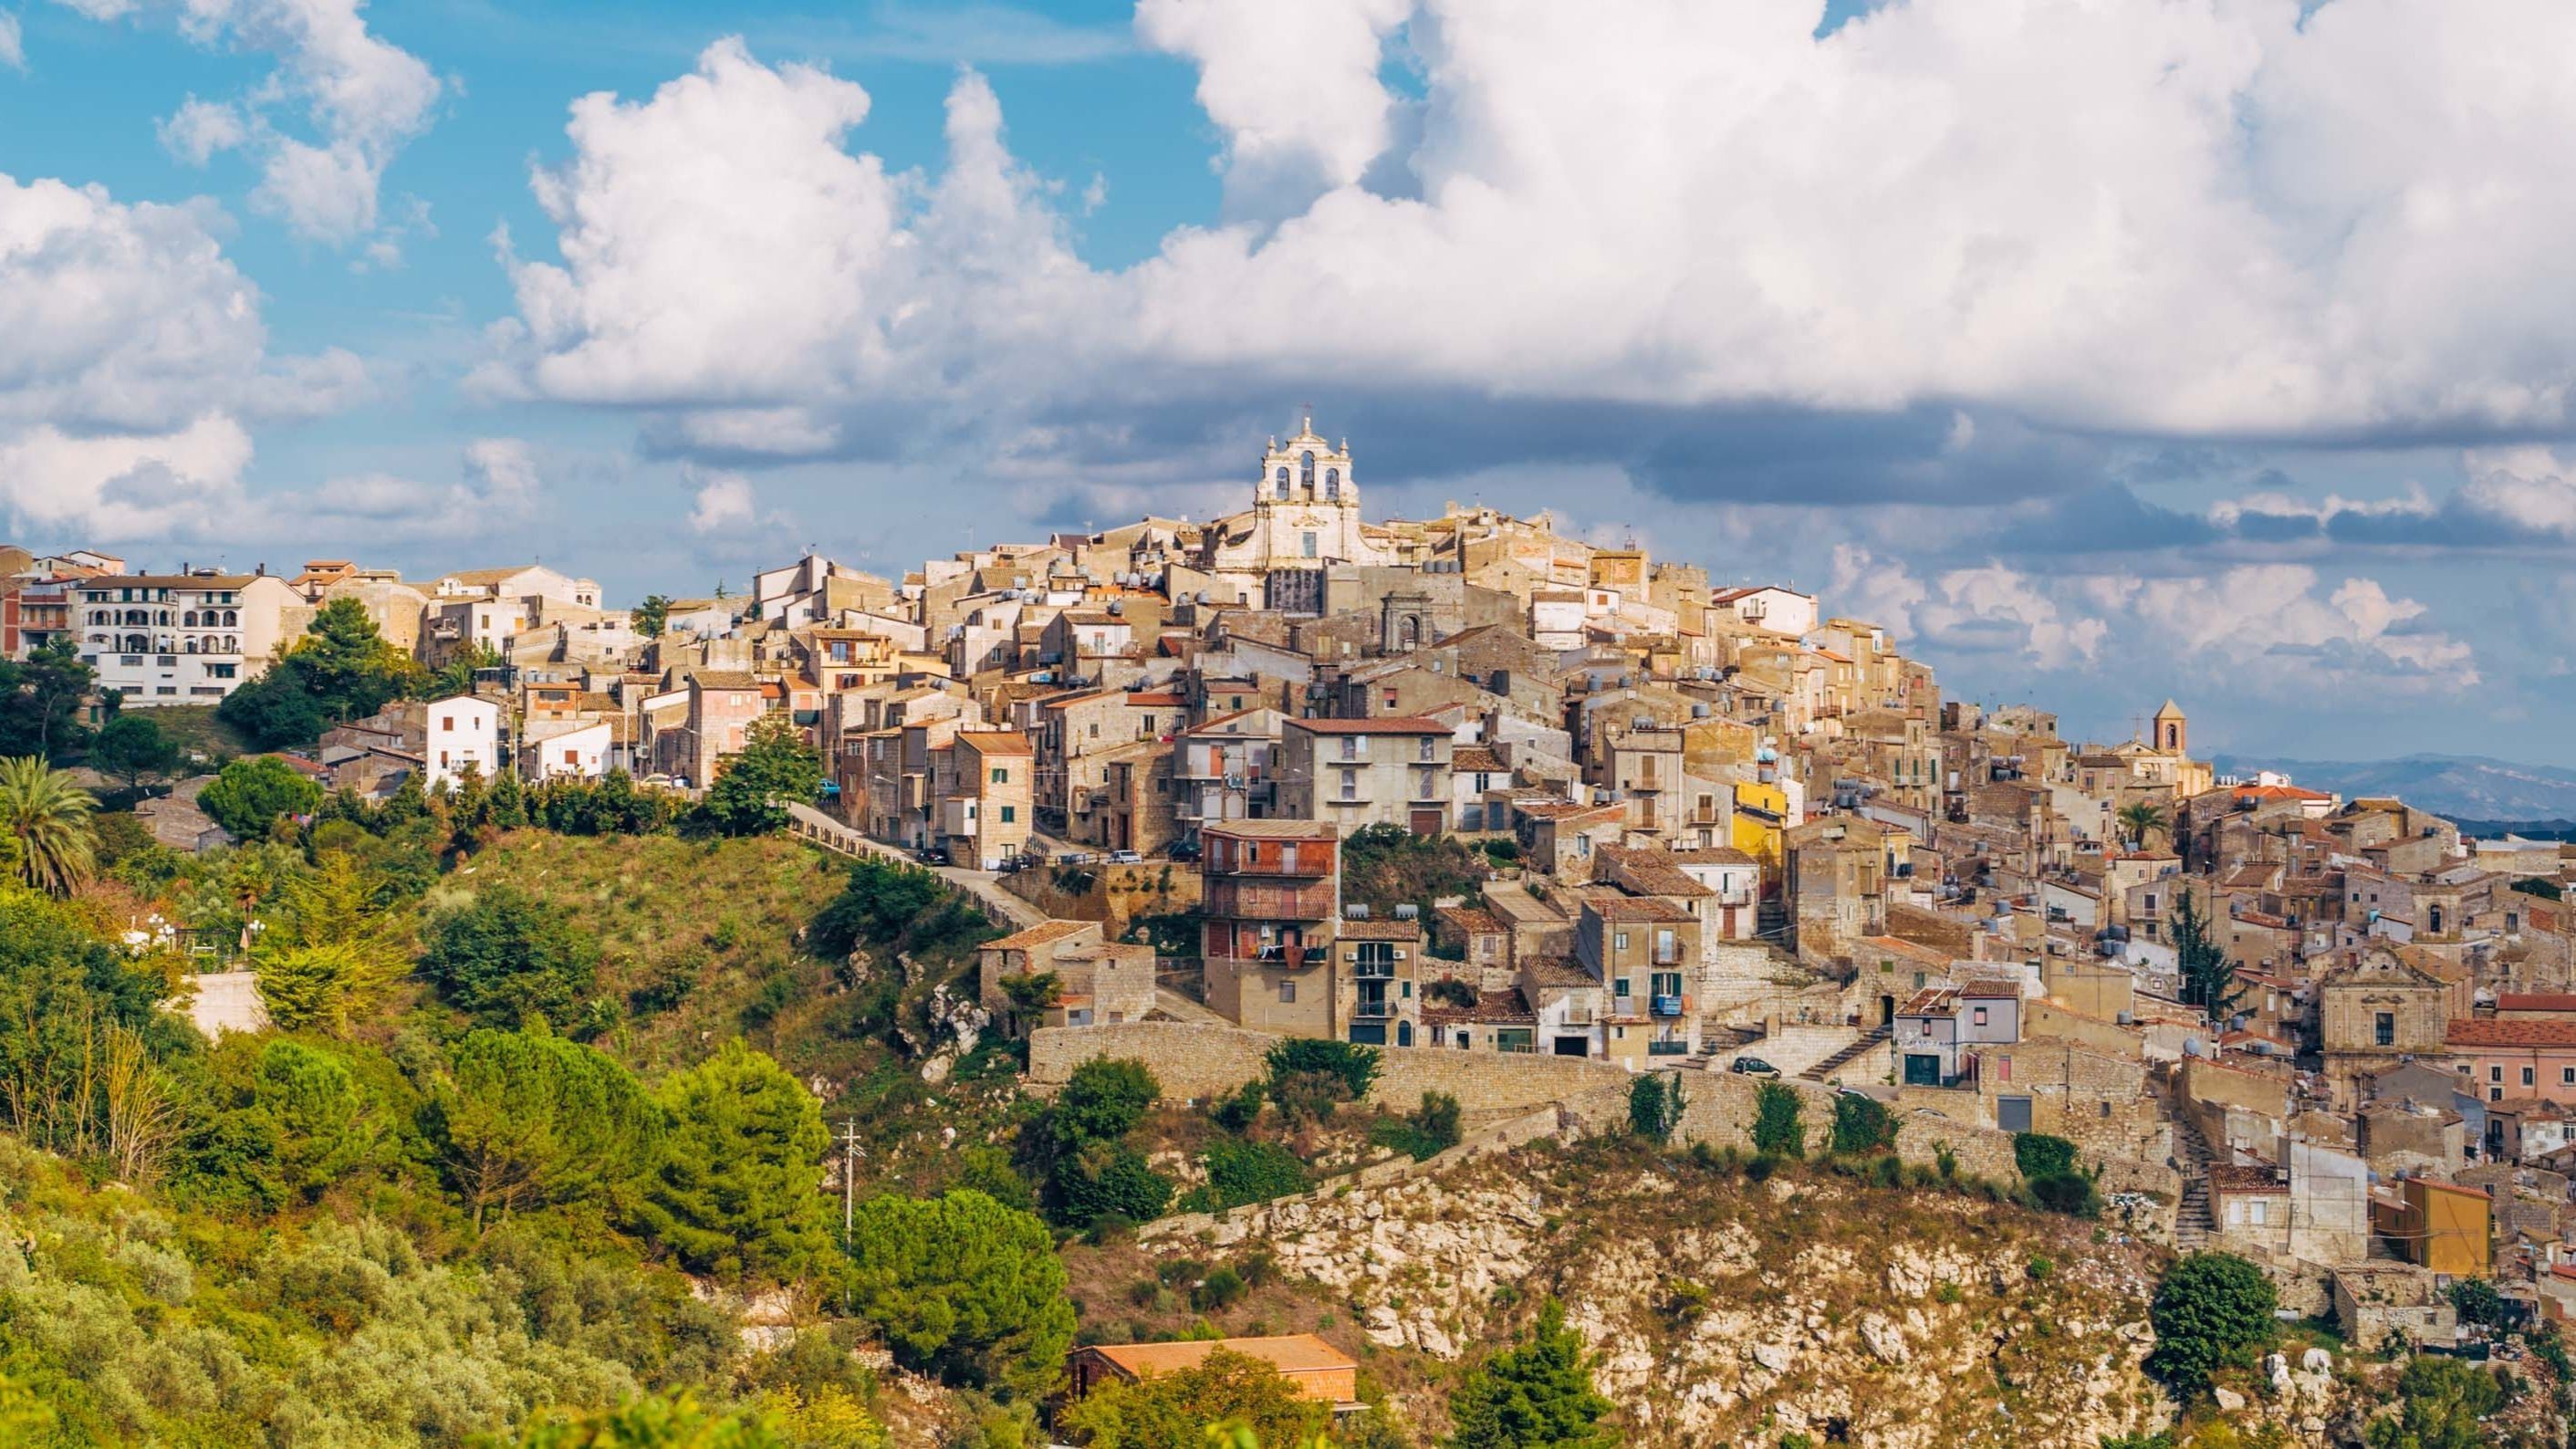 100 домов по 1 евро: почему на Сицилии бесплатно раздают недвижимость